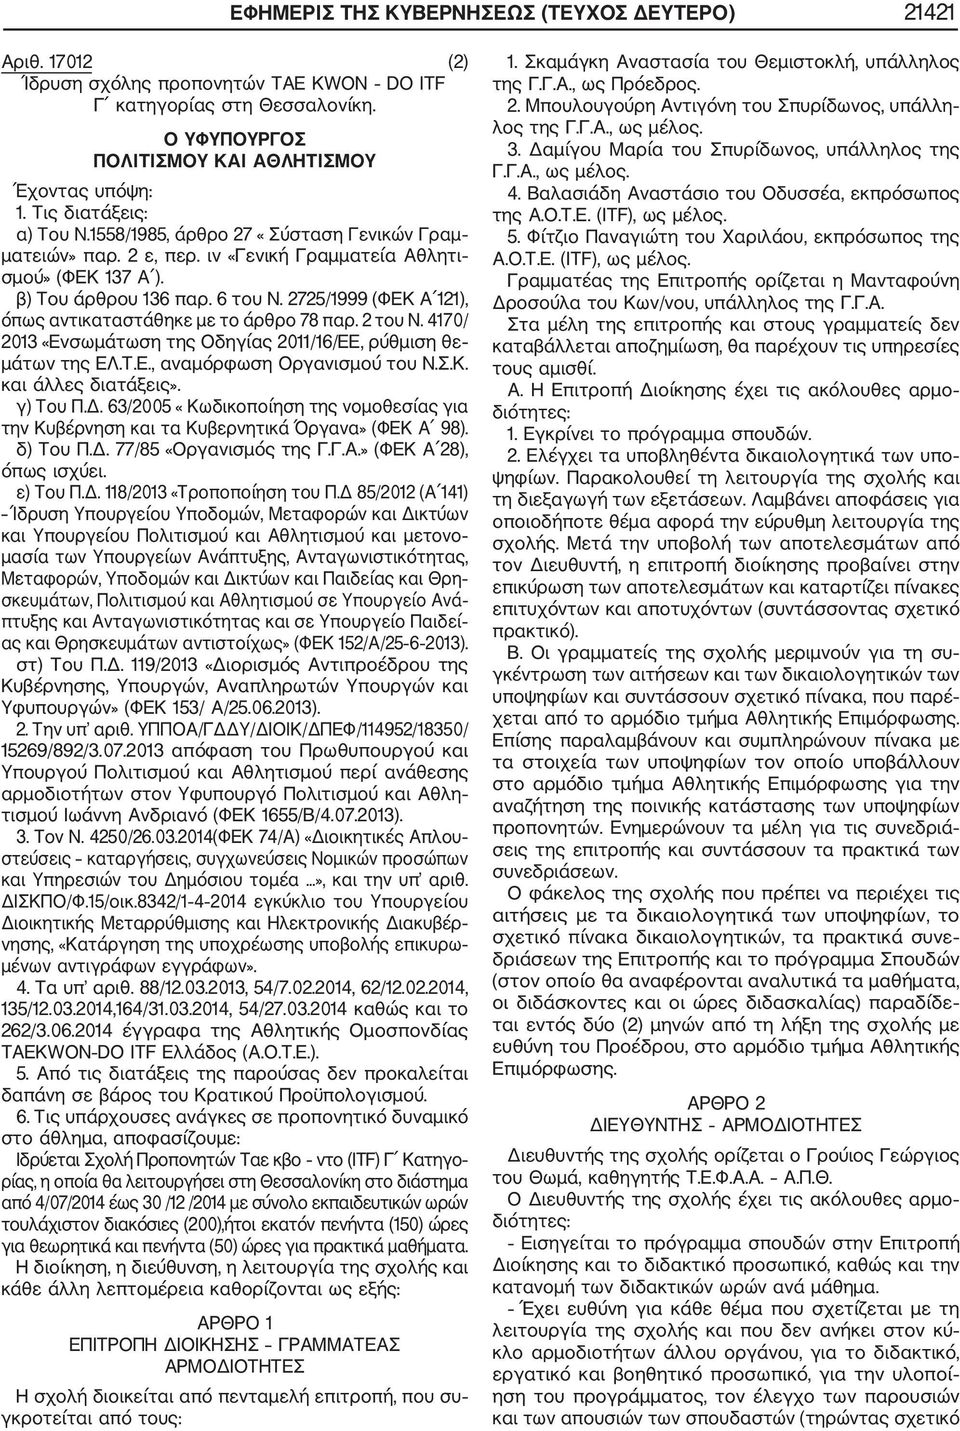 2725/1999 (ΦΕΚ Α 121), όπως αντικαταστάθηκε με το άρθρο 78 παρ. 2 του Ν. 4170/ 2013 «Ενσωμάτωση της Οδηγίας 2011/16/ΕΕ, ρύθμιση θε μάτων της ΕΛ.Τ.Ε., αναμόρφωση Οργανισμού του Ν.Σ.Κ. και άλλες διατάξεις».